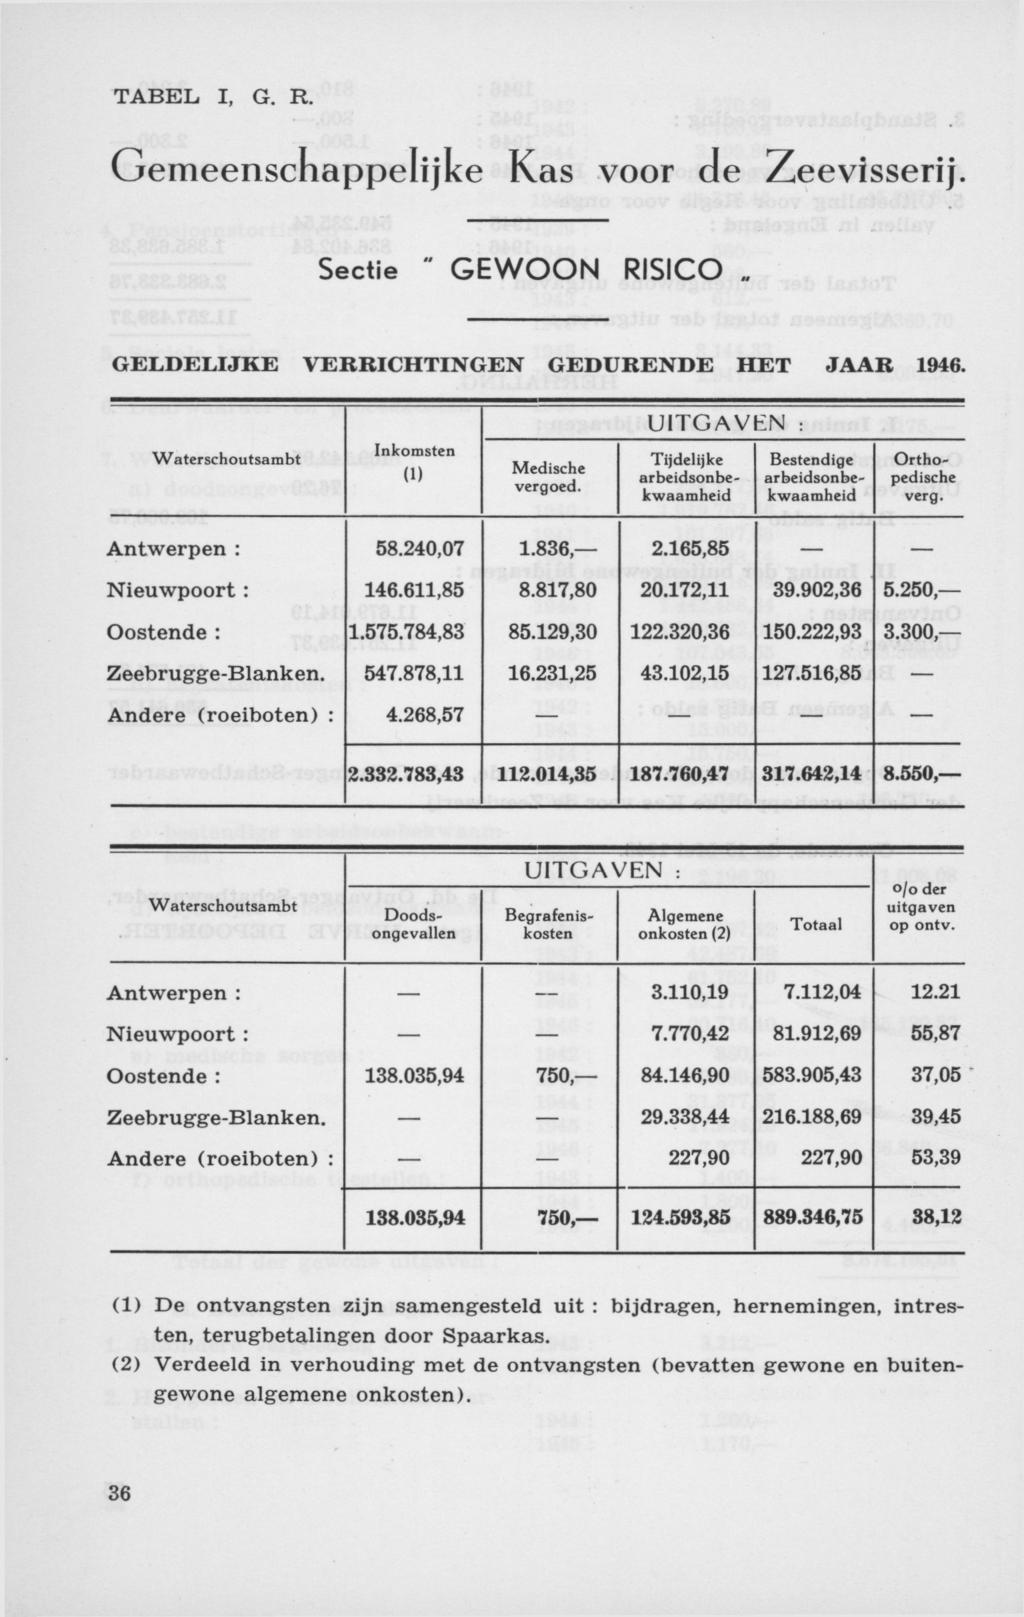 TABEL I, G. R. Gemeenschappelijke Kas voor de Zeevisserij. Sectie " GEWOON RISICO GELDELIJKE VERRICHTINGEN GEDURENDE HET JAAR 1946. UITGAVEN : Waterschoutsambt Inkomsten (1) Medische vergoed.